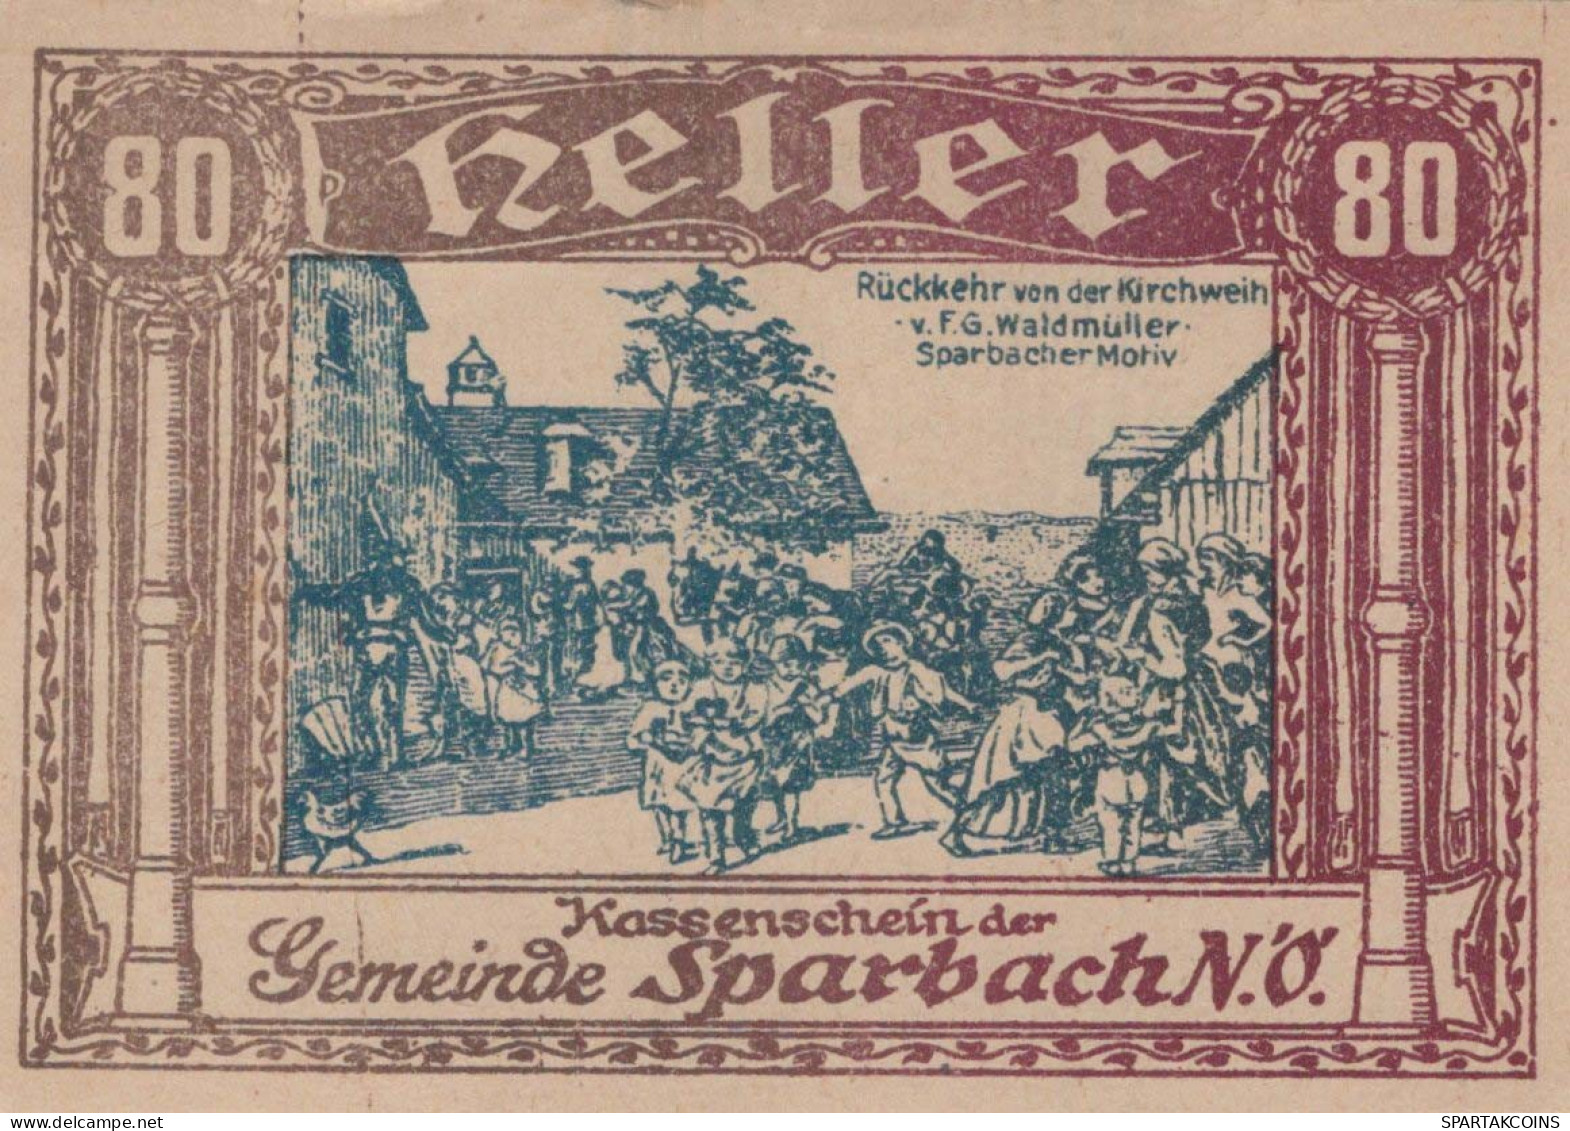 80 HELLER Stadt Sparbach Niedrigeren Österreich Notgeld Papiergeld Banknote #PG996 - Lokale Ausgaben